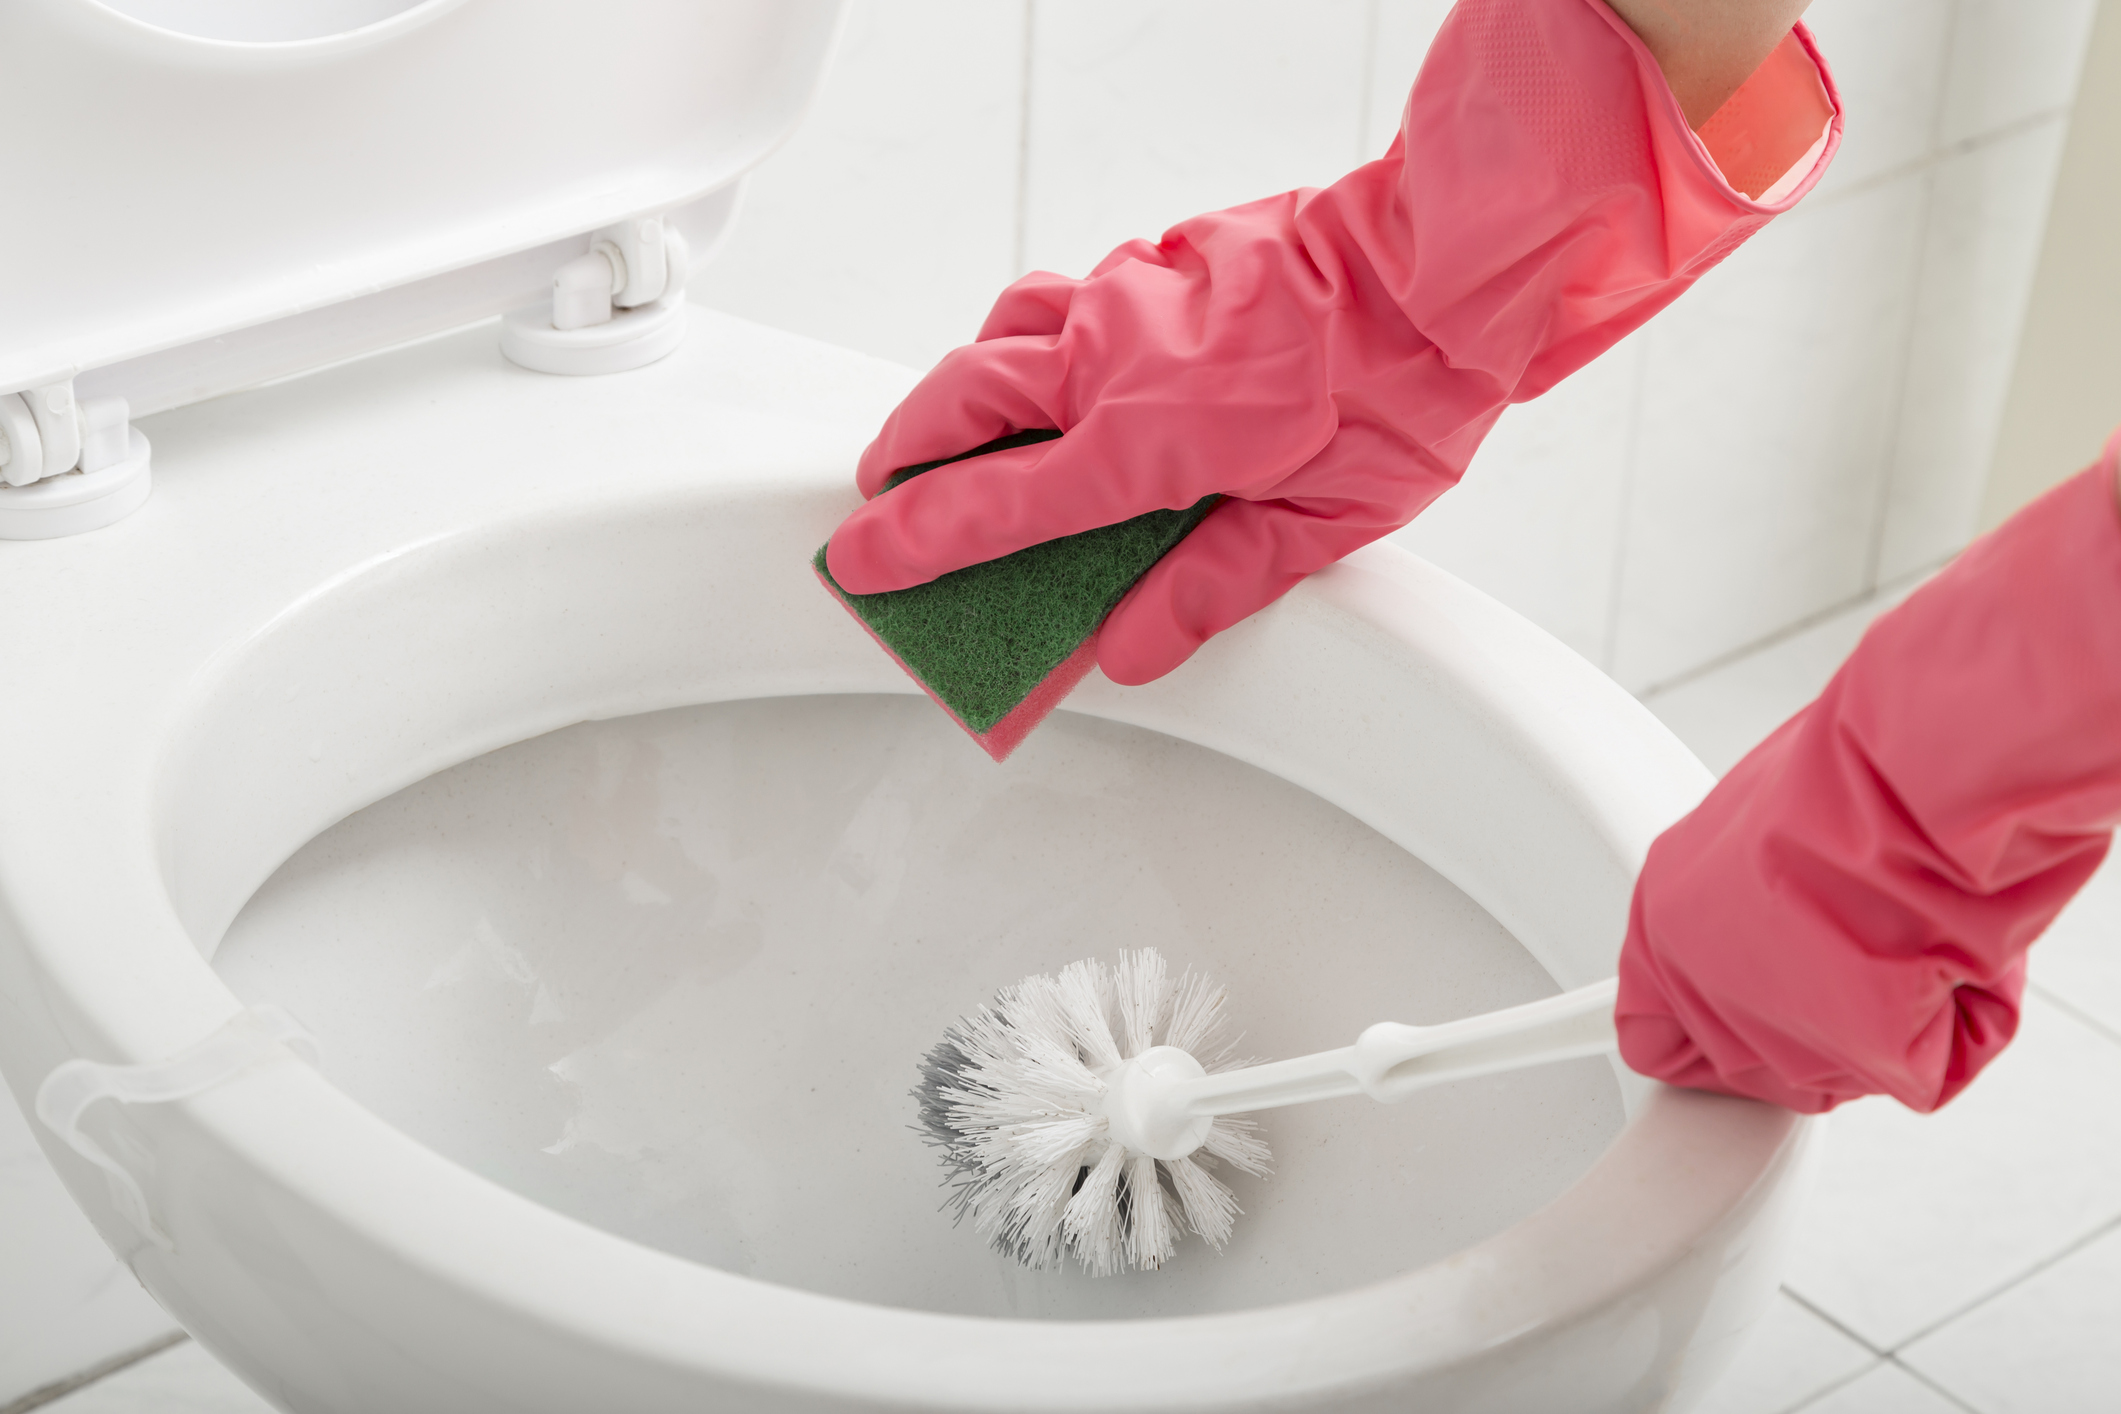 Imagem: pessoa limpando vaso sanitário